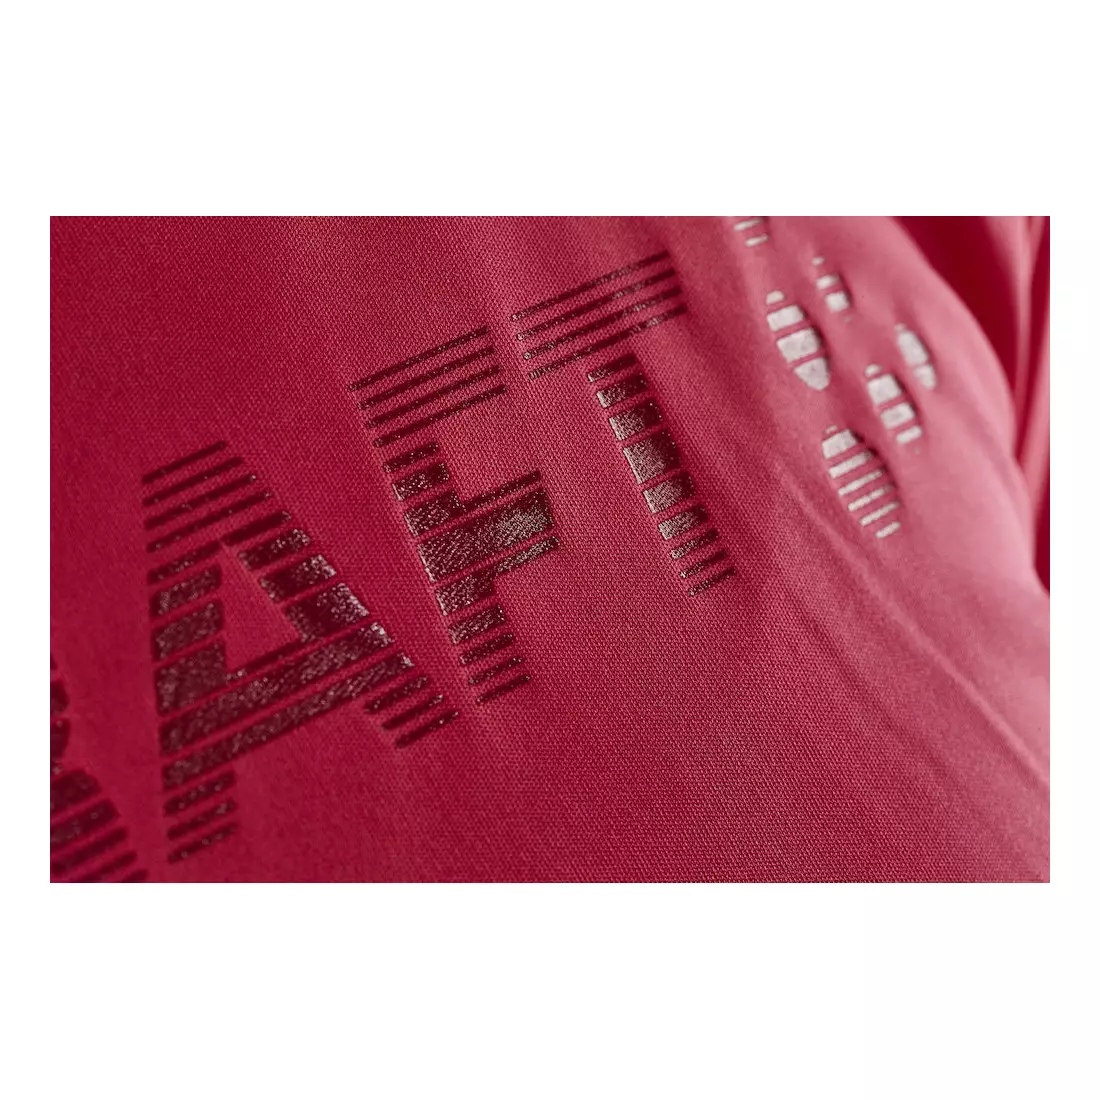 CRAFT Prime Logo 1904342 -1411 tricou pentru alergare pentru femei